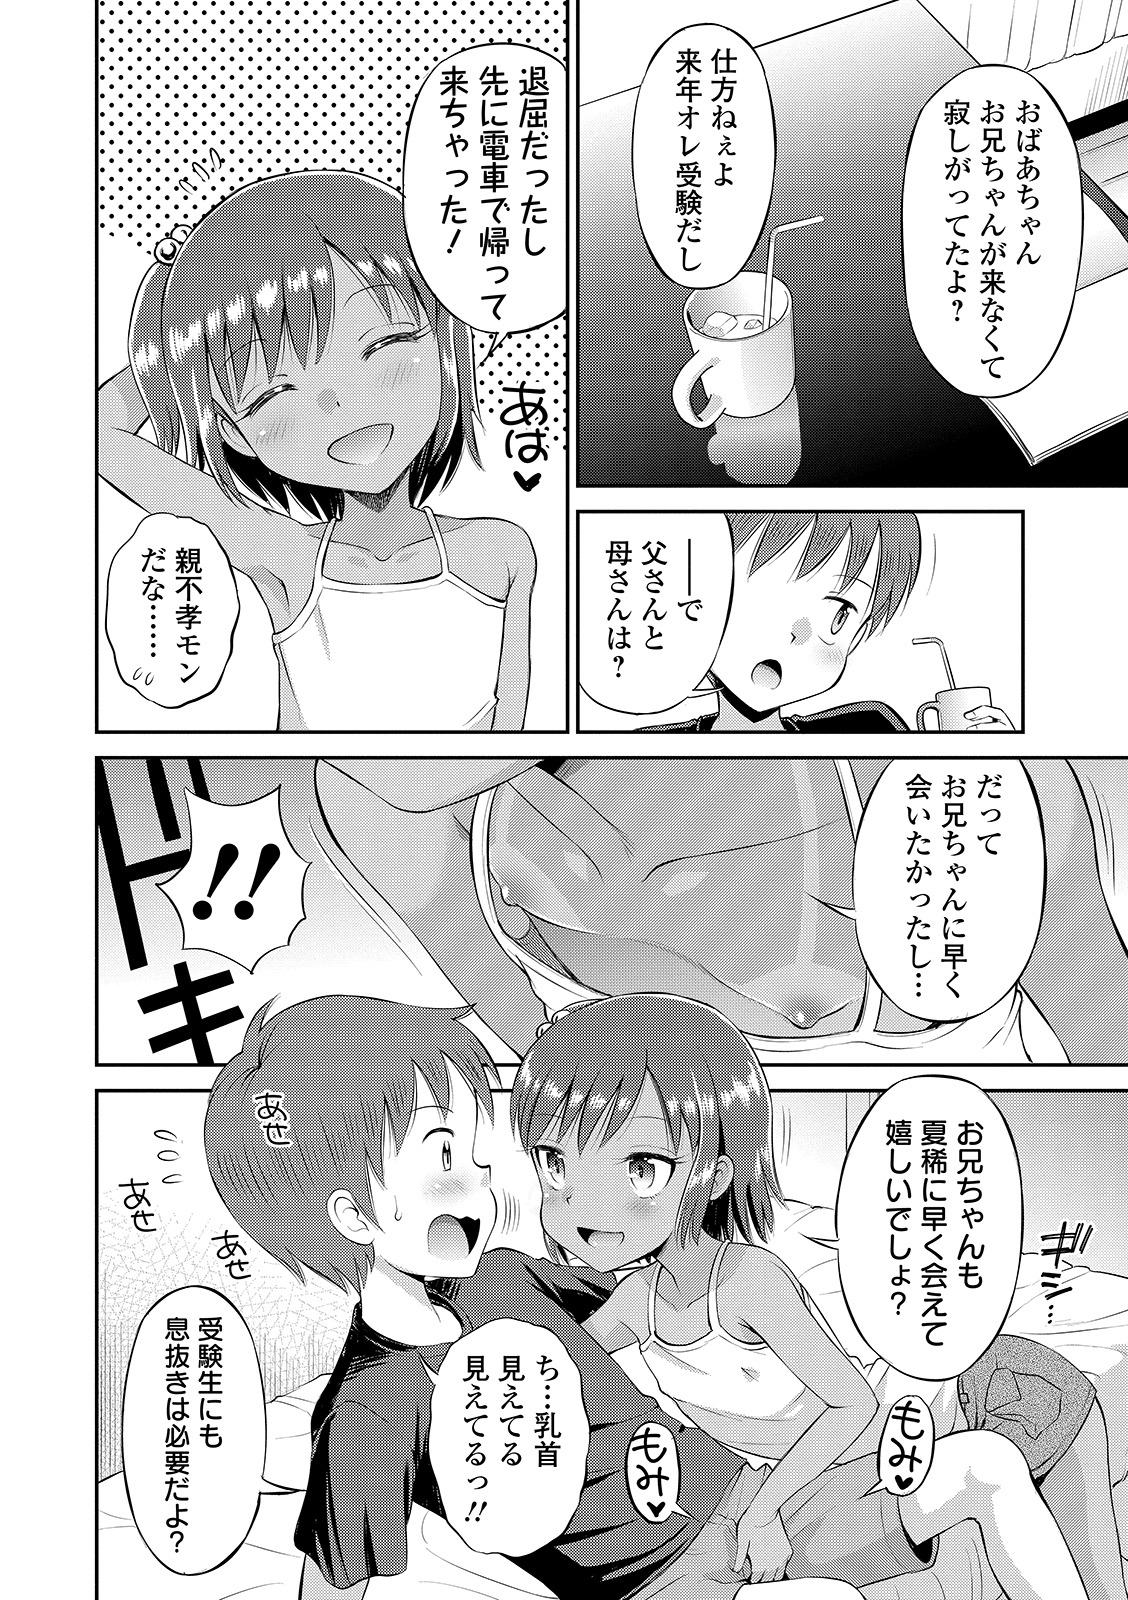 Assgape Watashi ga Onnanoko ni Naru made Nasty Free Porn - Page 8